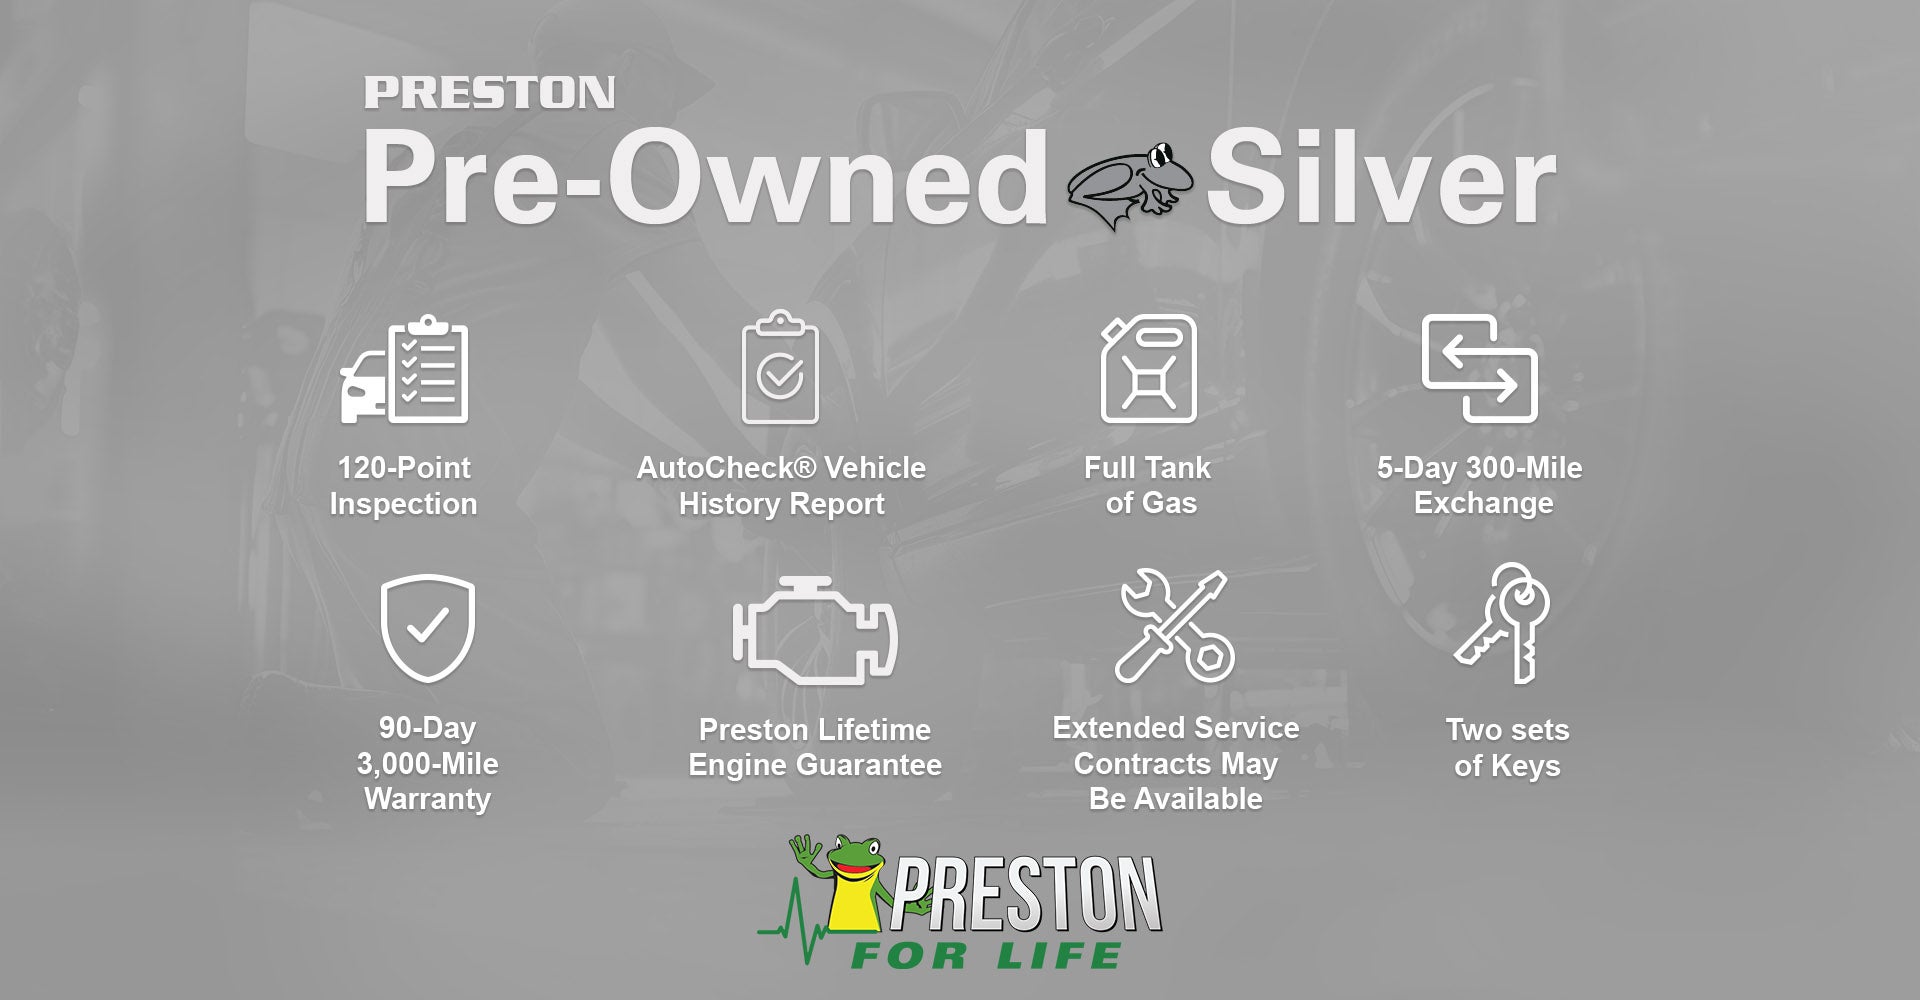 Preston Pre-Owned Silver